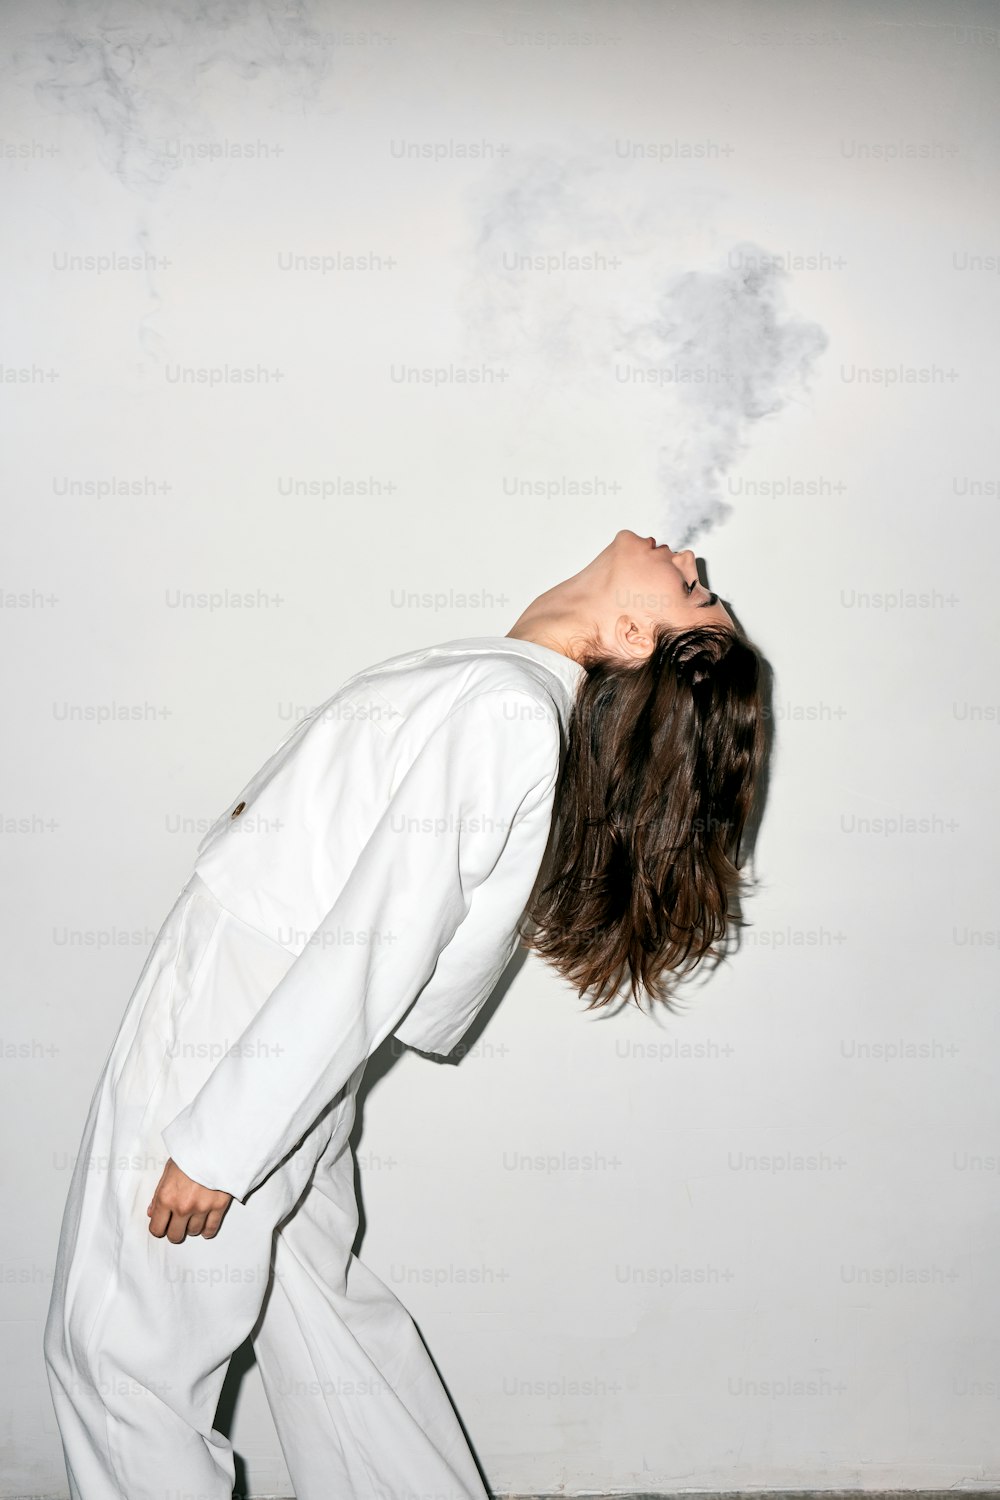 흰 양복을 입은 여자가 담배를 피우고 있다